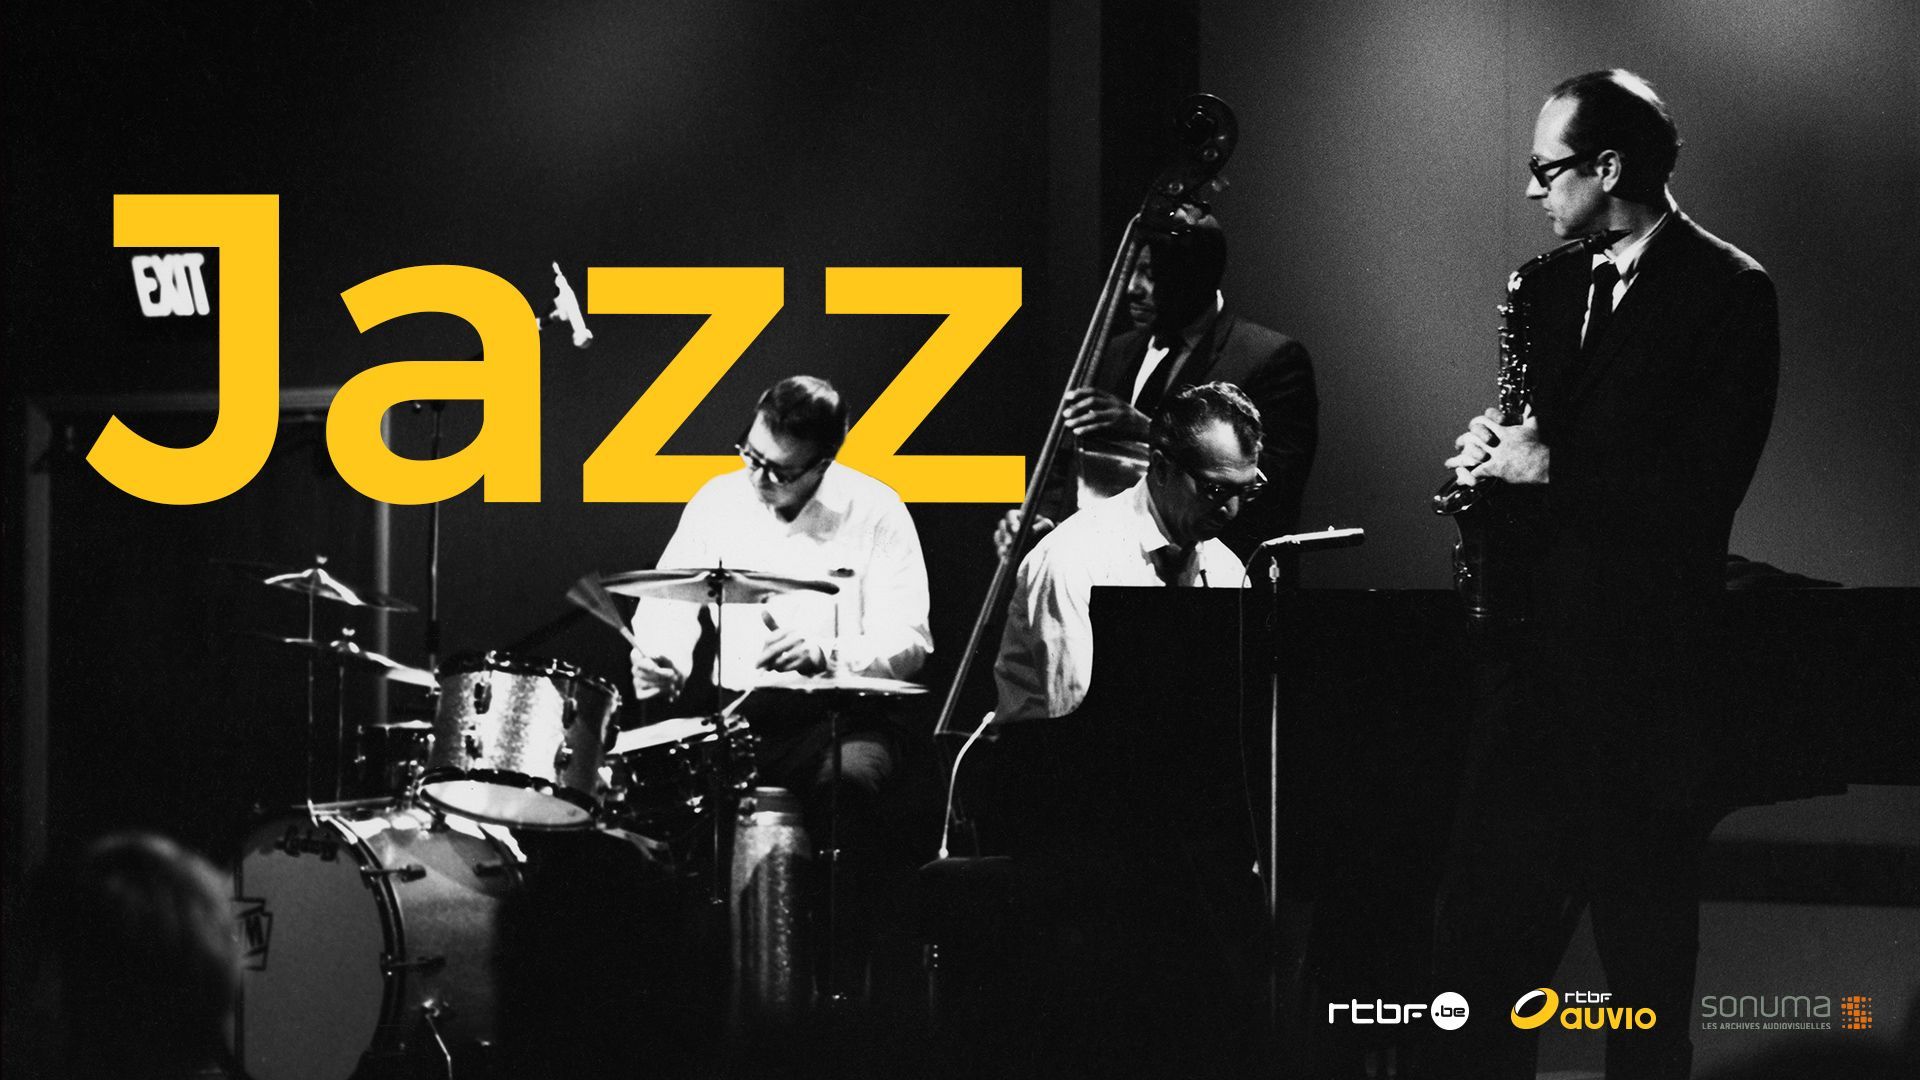 journee-internationale-du-jazz-ce-jeudi-30-avril-la-rtbf-poursuit-la-mise-en-valeur-de-ses-contenus-jazz